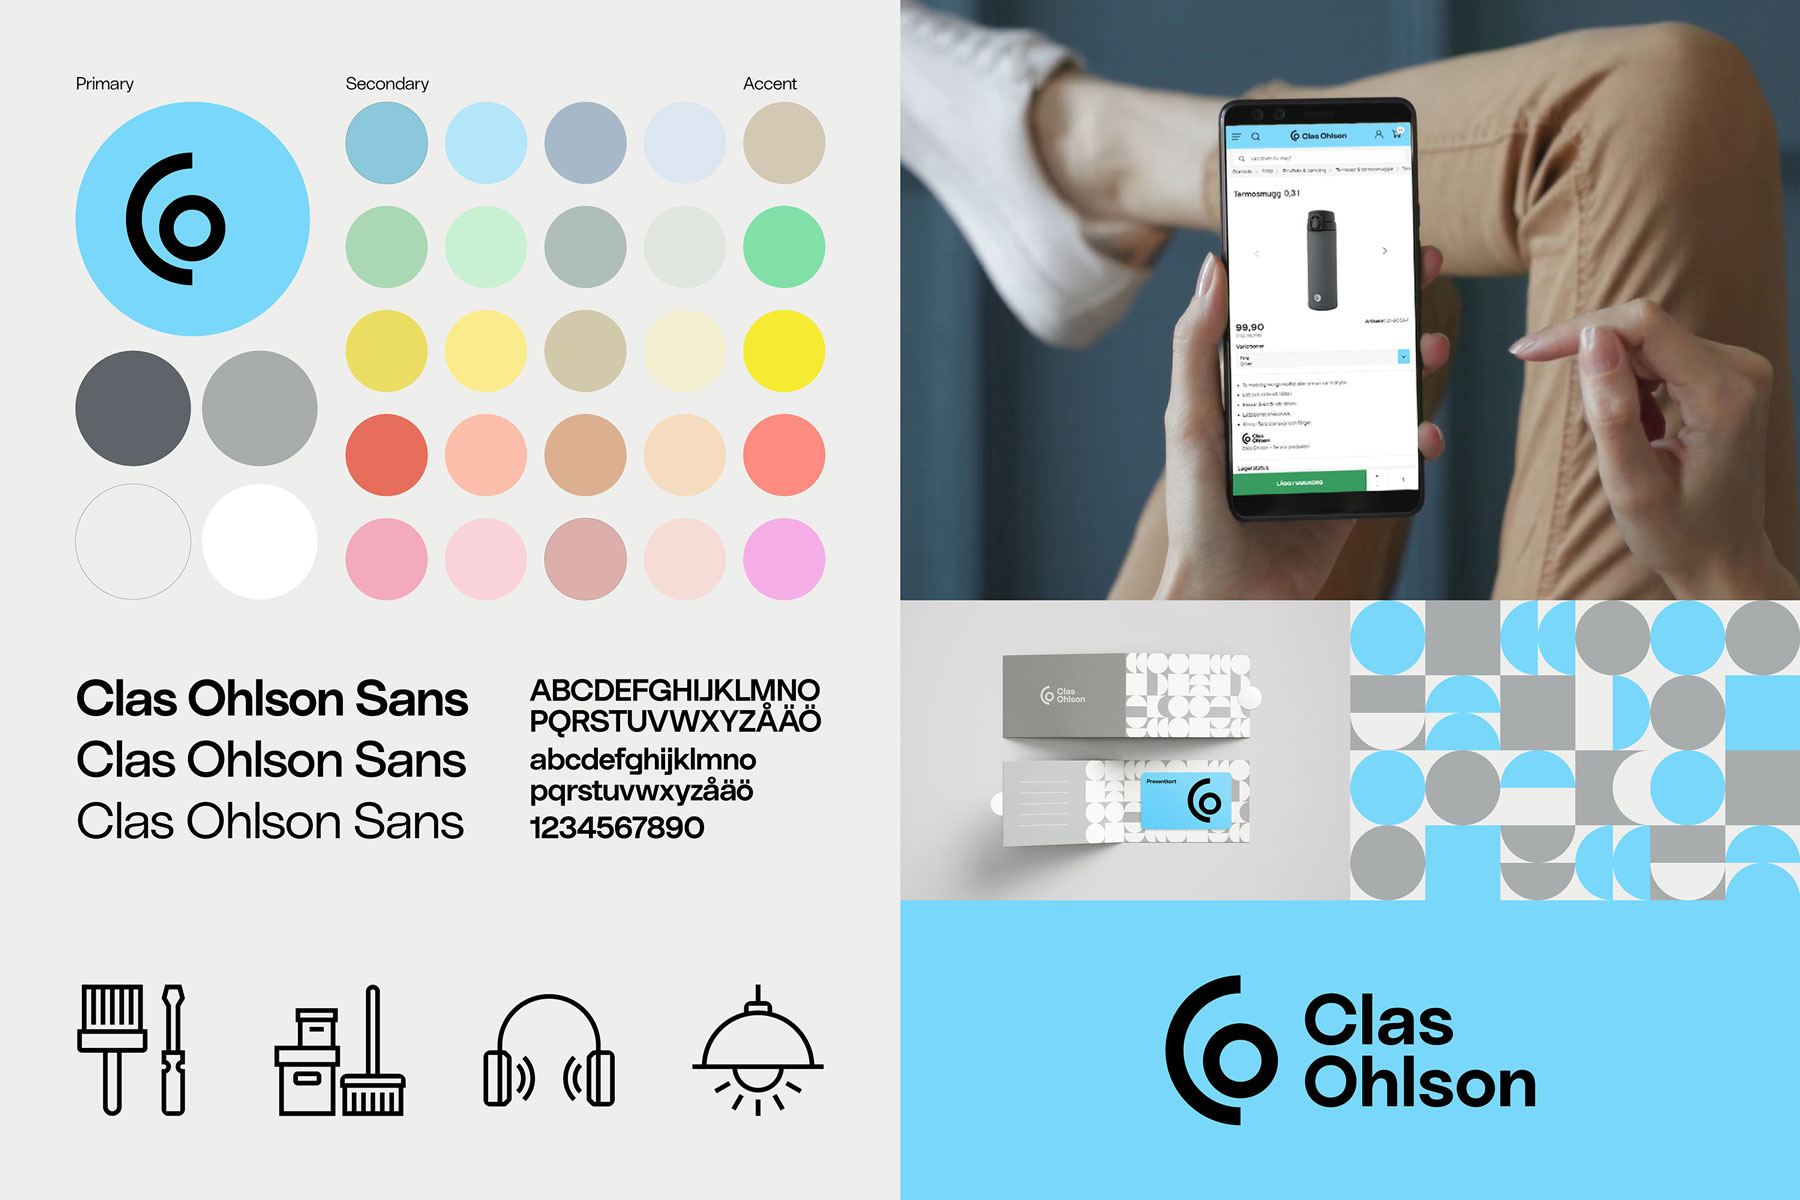 Clas Ohlson lanserar ny ”visuell identitet”